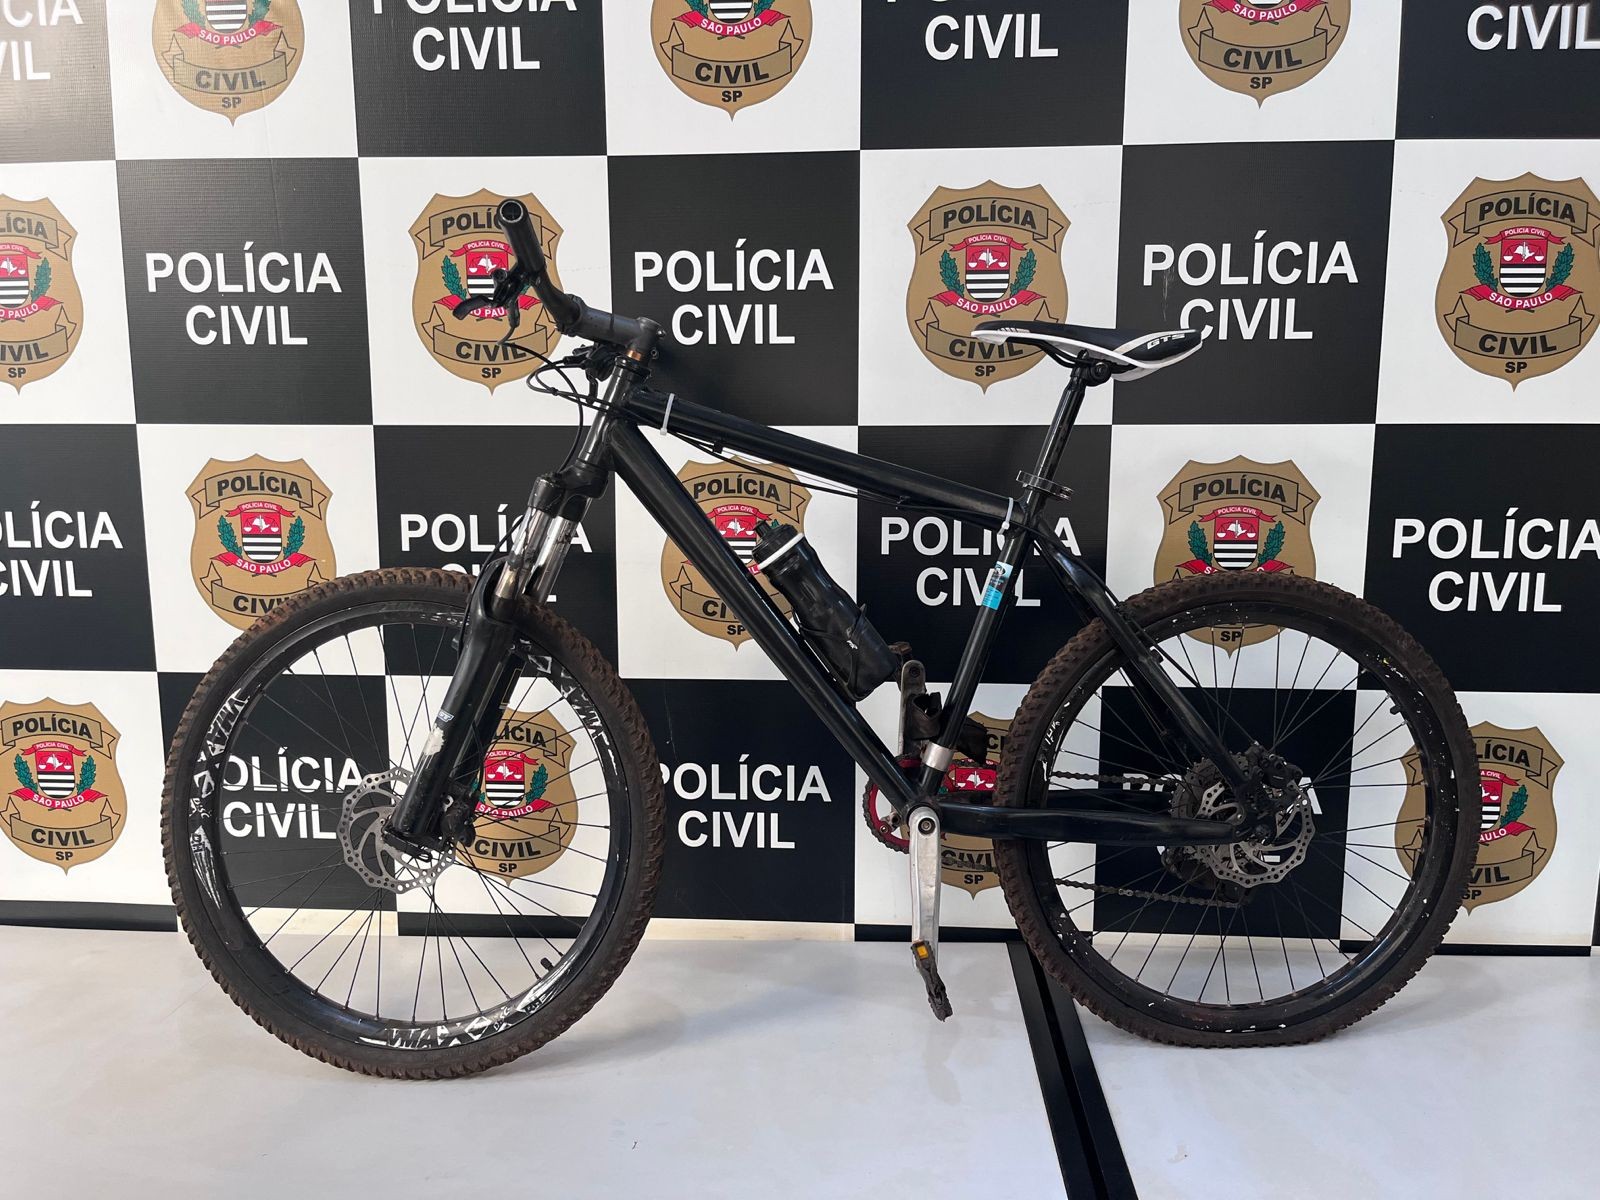 Polícia procura por dois suspeitos de roubar bicicletas na zona rural da região de Ribeirão Preto, SP